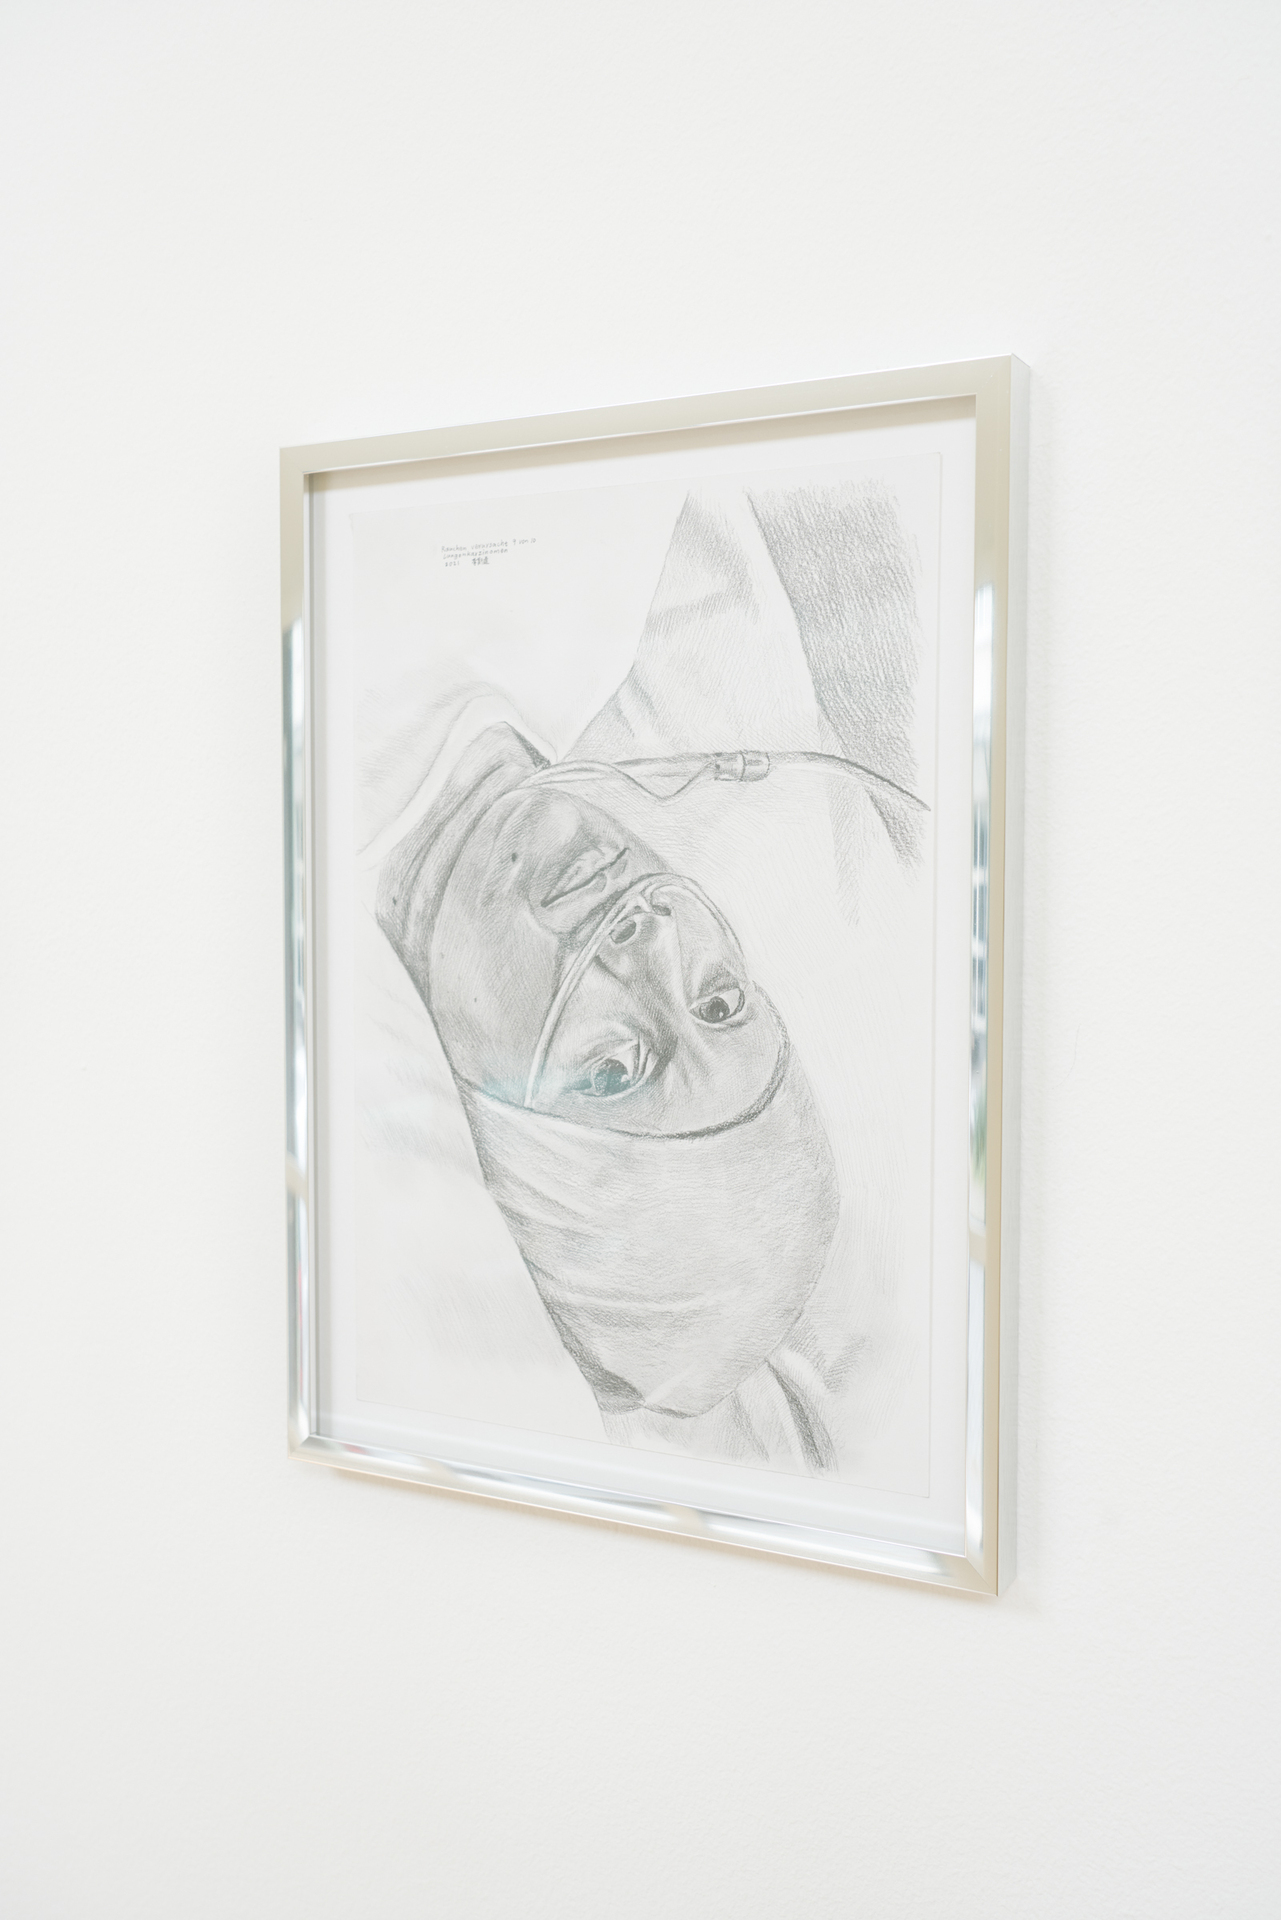 Siyi Li, Das Rauchen Aufgeben - für Ihre Lieben Weiterleben, 2021, Pencil on paper in aluminium frame, 25 x 34cm